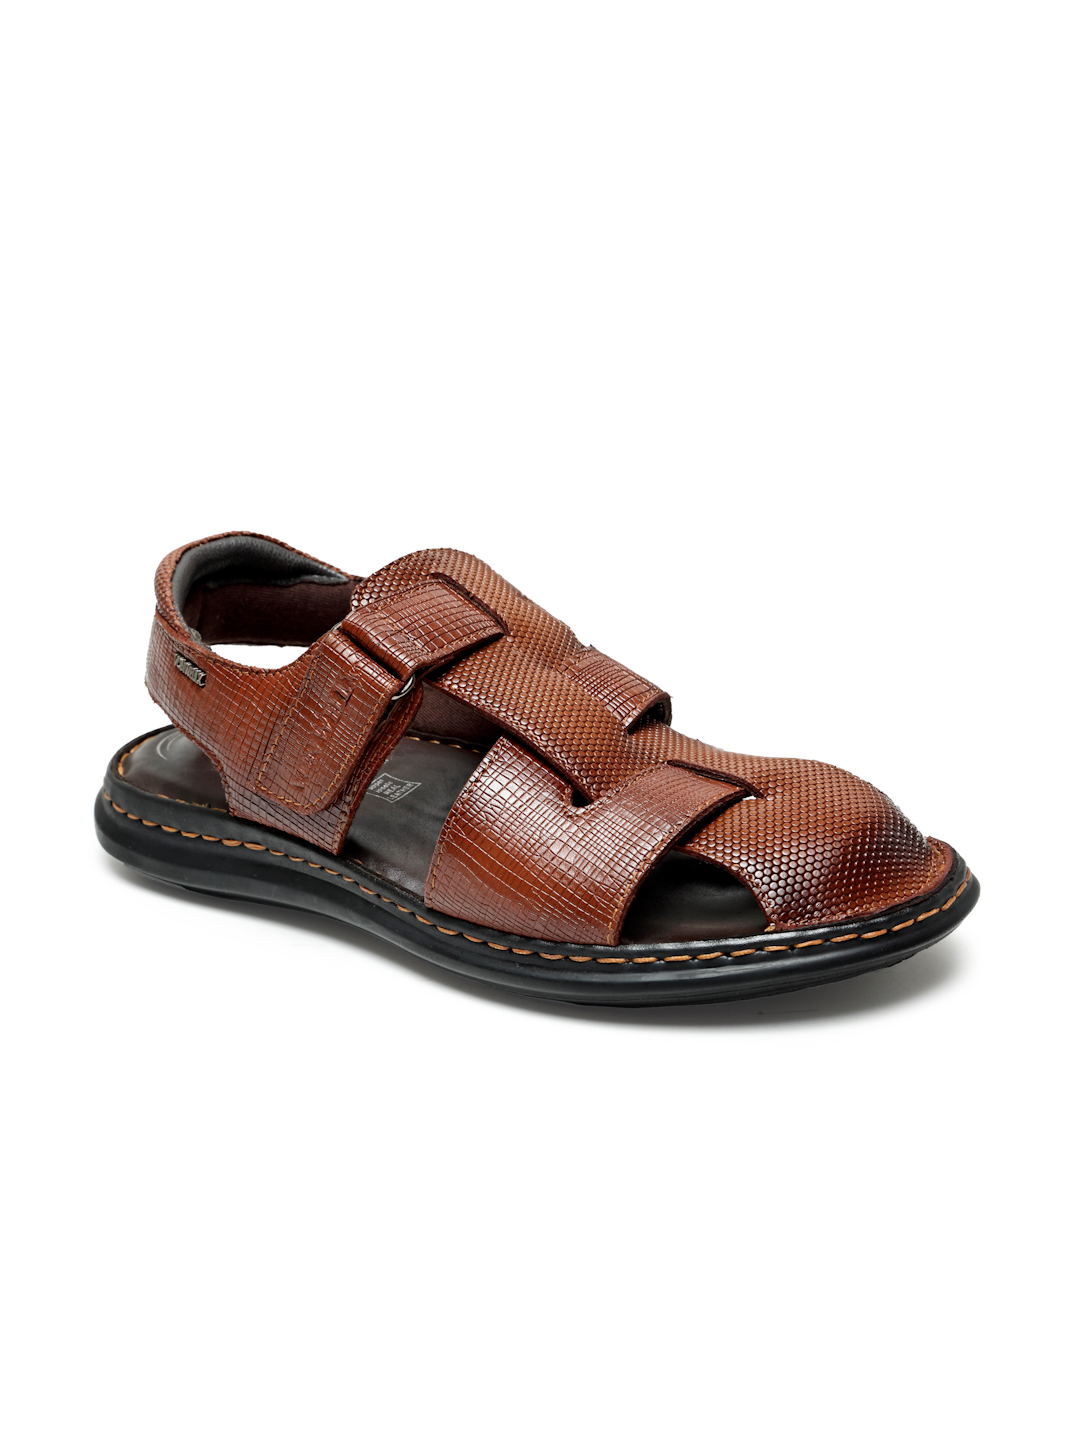 Buy Von Wellx Germany Comfort Men's Tan Sandals Morgen Online in Nashik